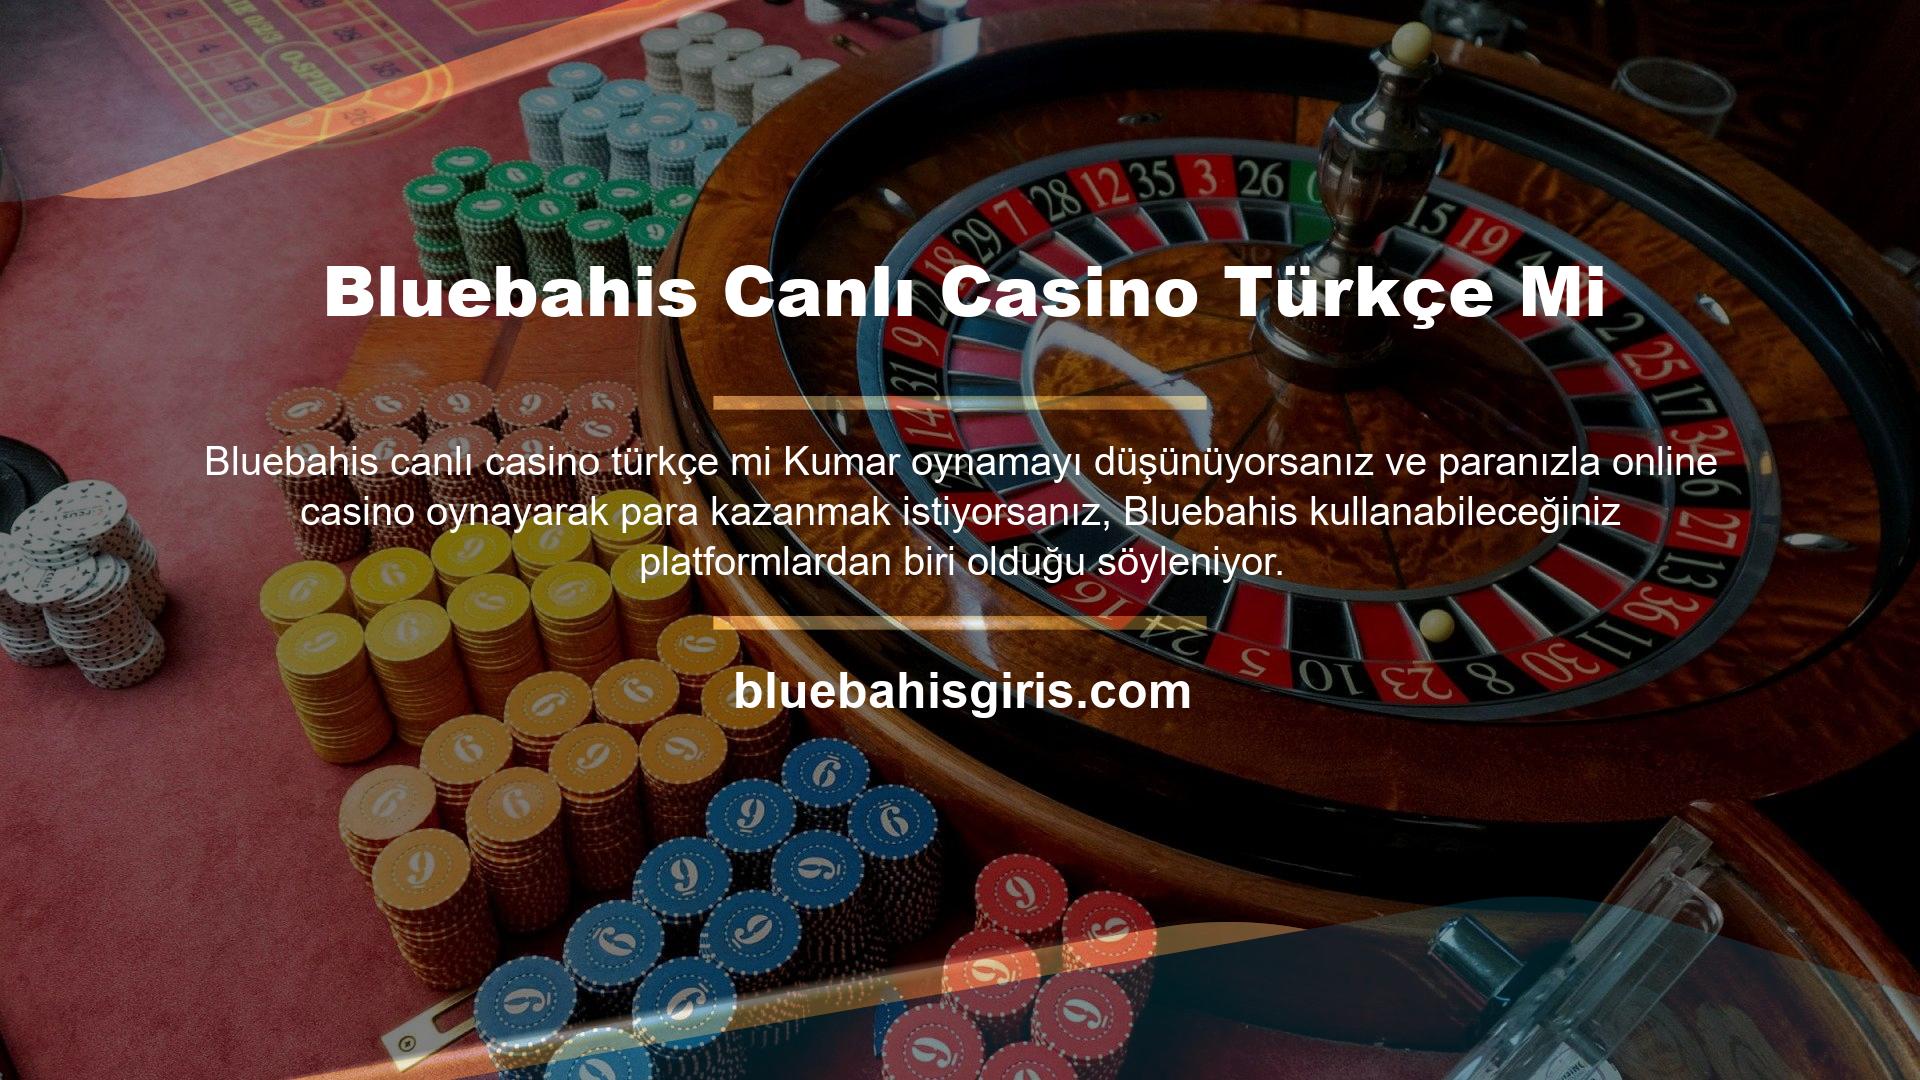 Peki Türk canlı casino konseptine sahip siteler bu konuda canlı casino oyunları konusunda hizmet veriyor mu? Tabii ki, Türkiye'de canlı online casino hizmetleri yukarıda listelenen bakara, blackjack rulet ve poker masalarında mevcuttur